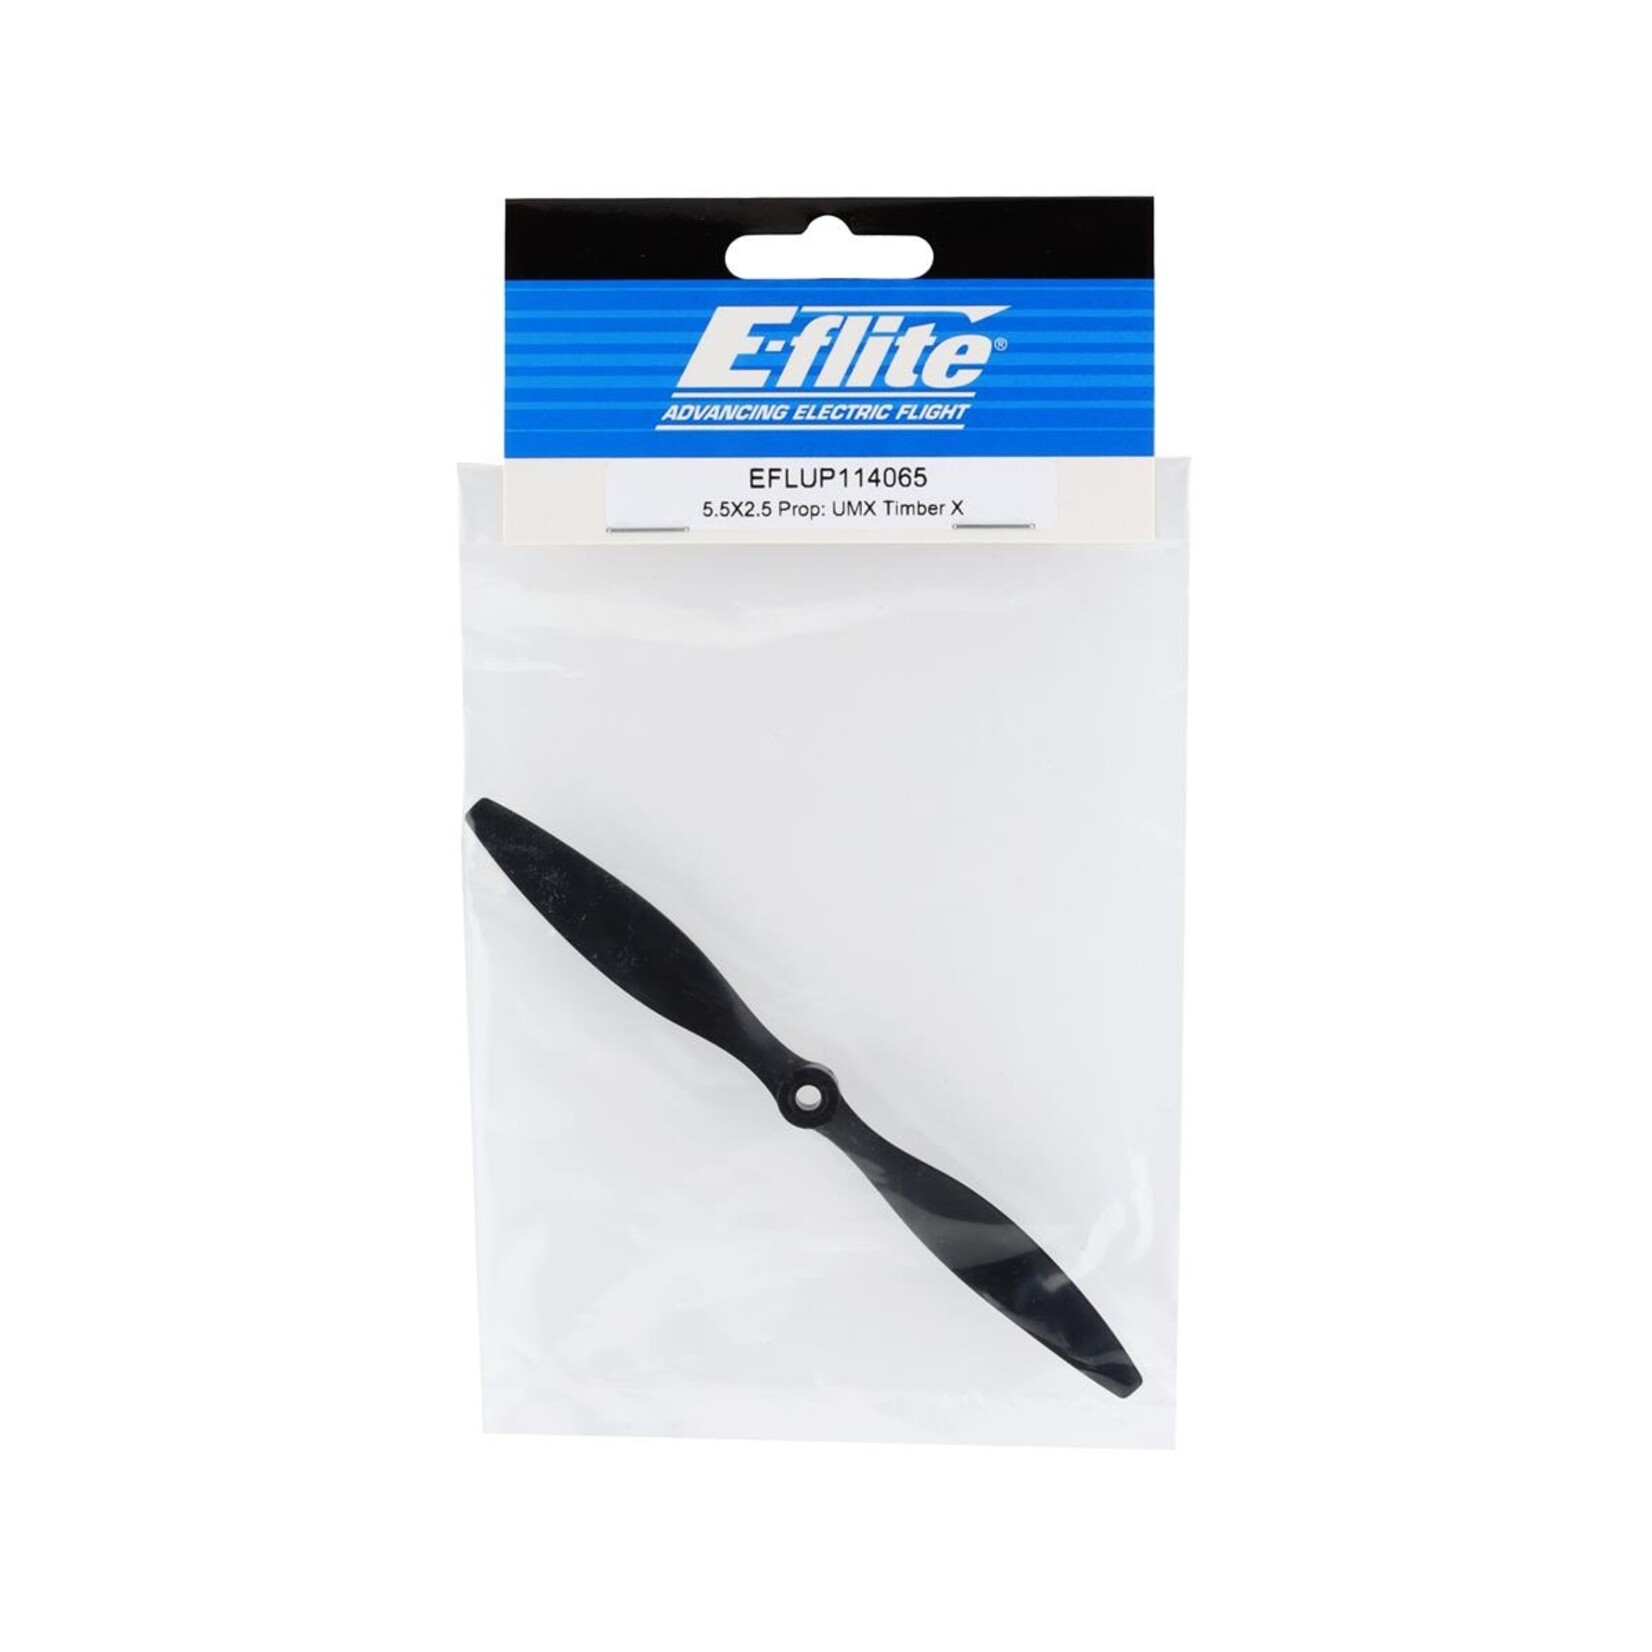 E-flite E-flite 5.5x2.5 UMX Timber X Propeller #EFLUP114065